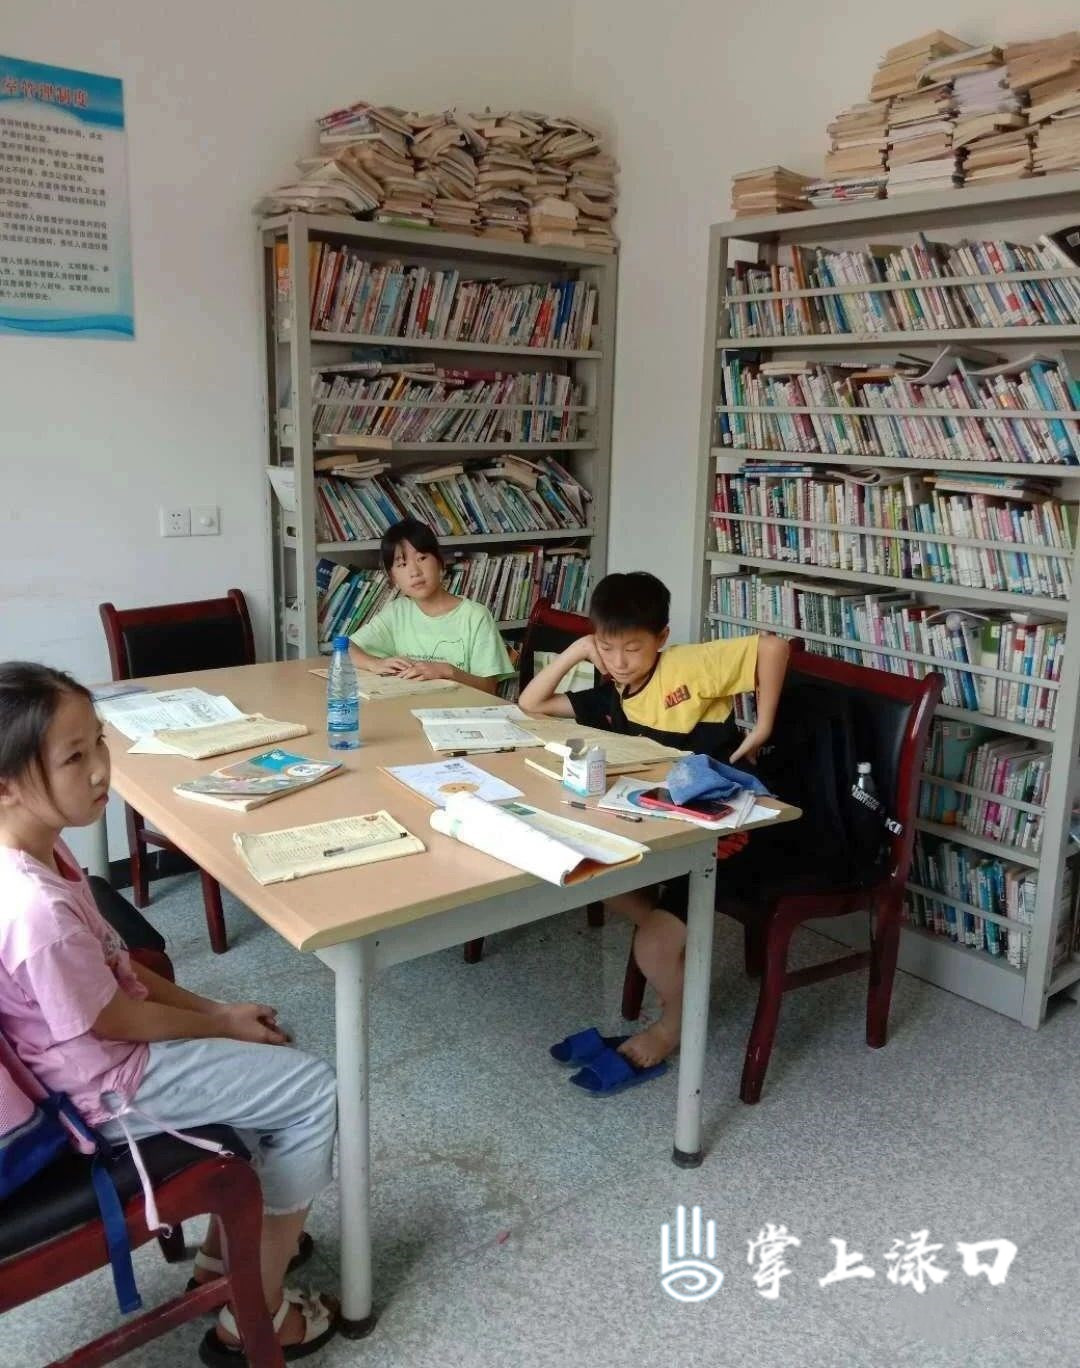 看完古树，我们去河包村委的小图书馆转转。这里供村里的孩子们课余学习，虽然不大，但书架上的图书满满当当。